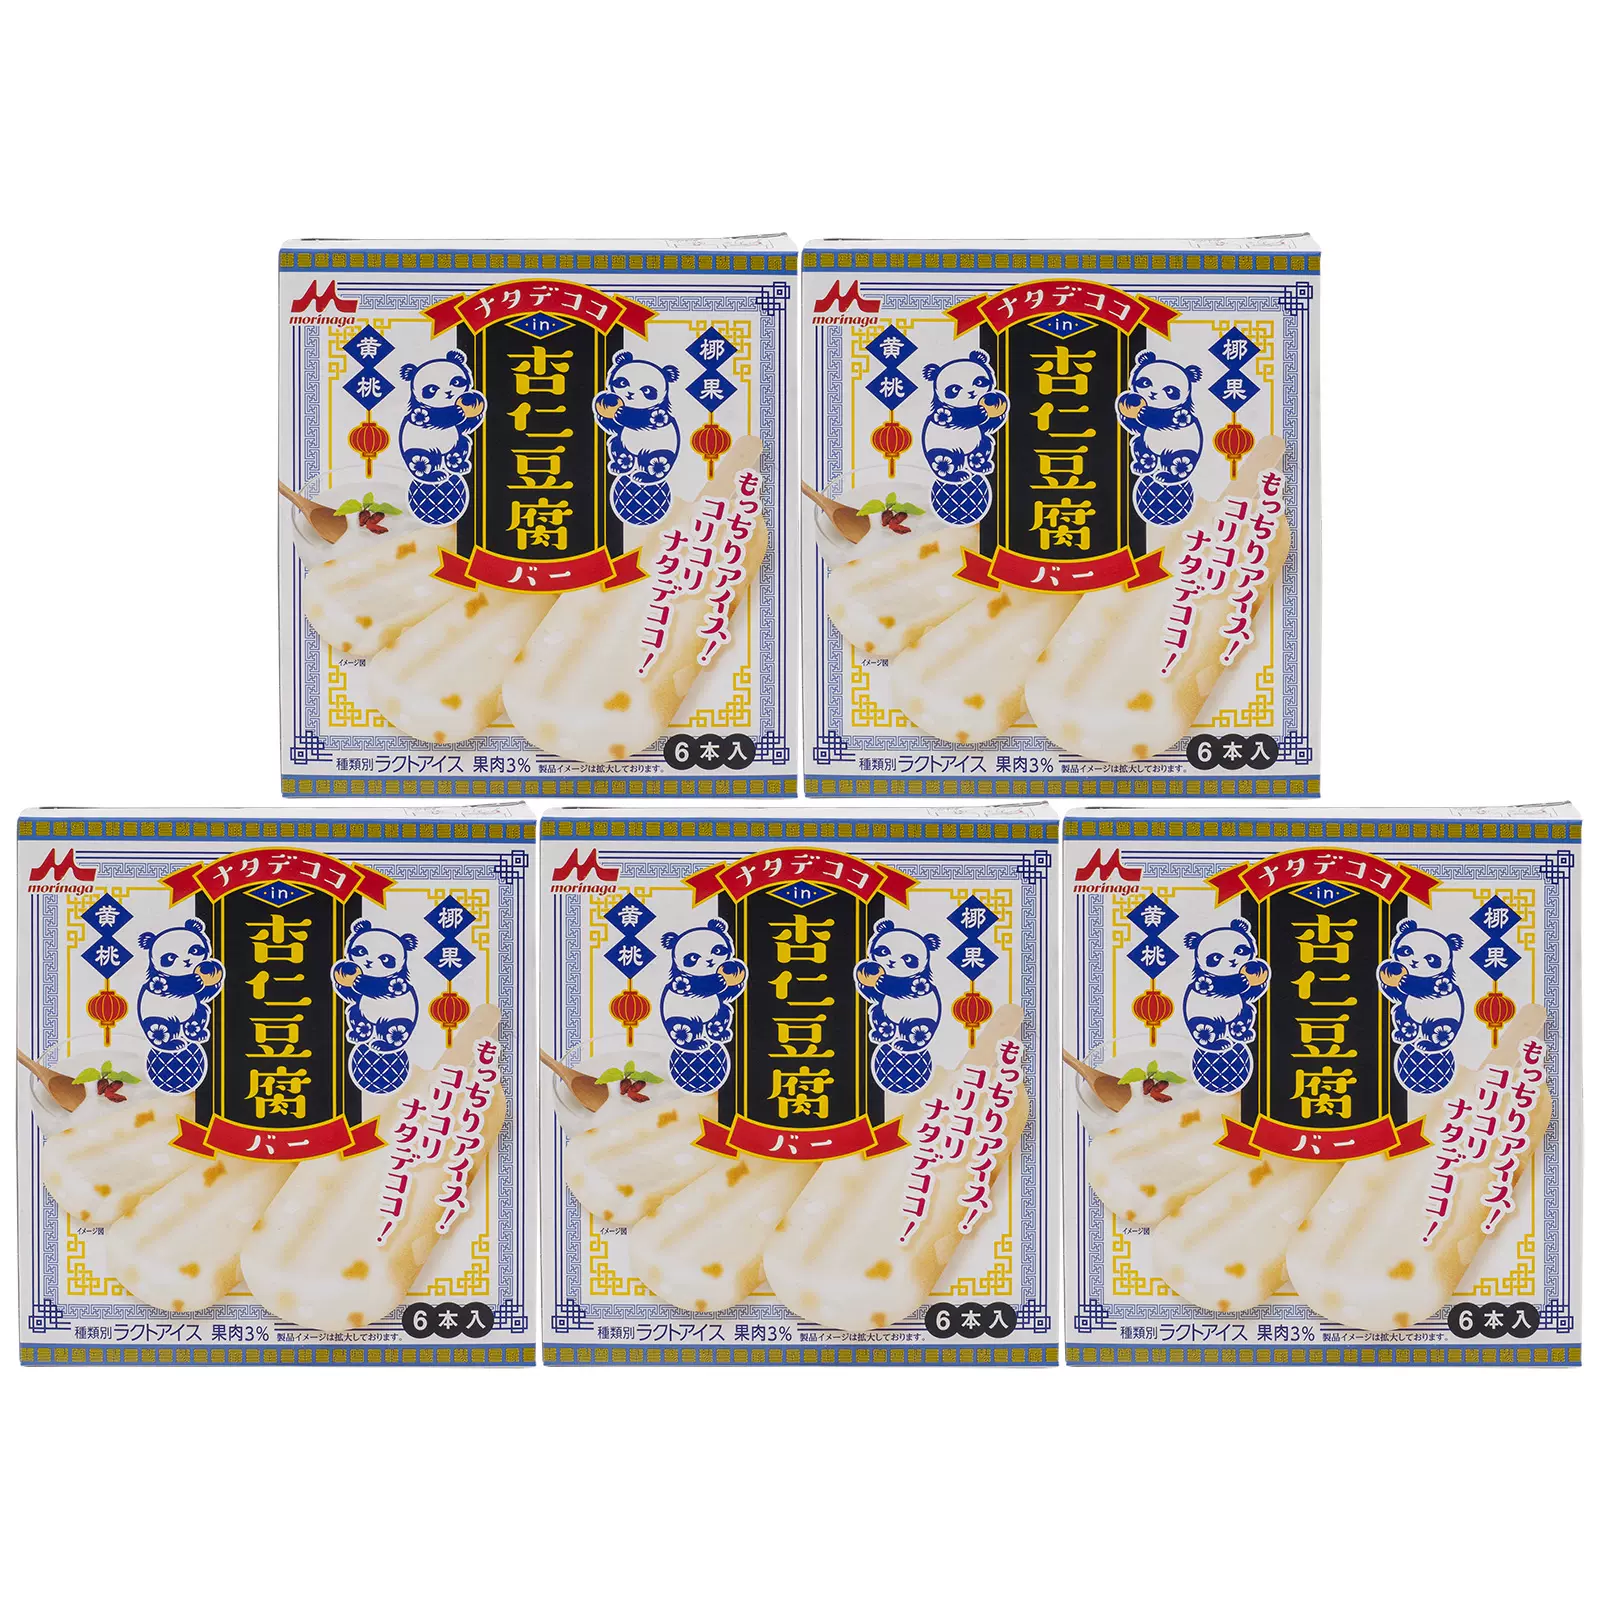 现货顺丰日本进口森永杏仁豆腐冰淇淋限定夏季新品牛乳味300ml5盒